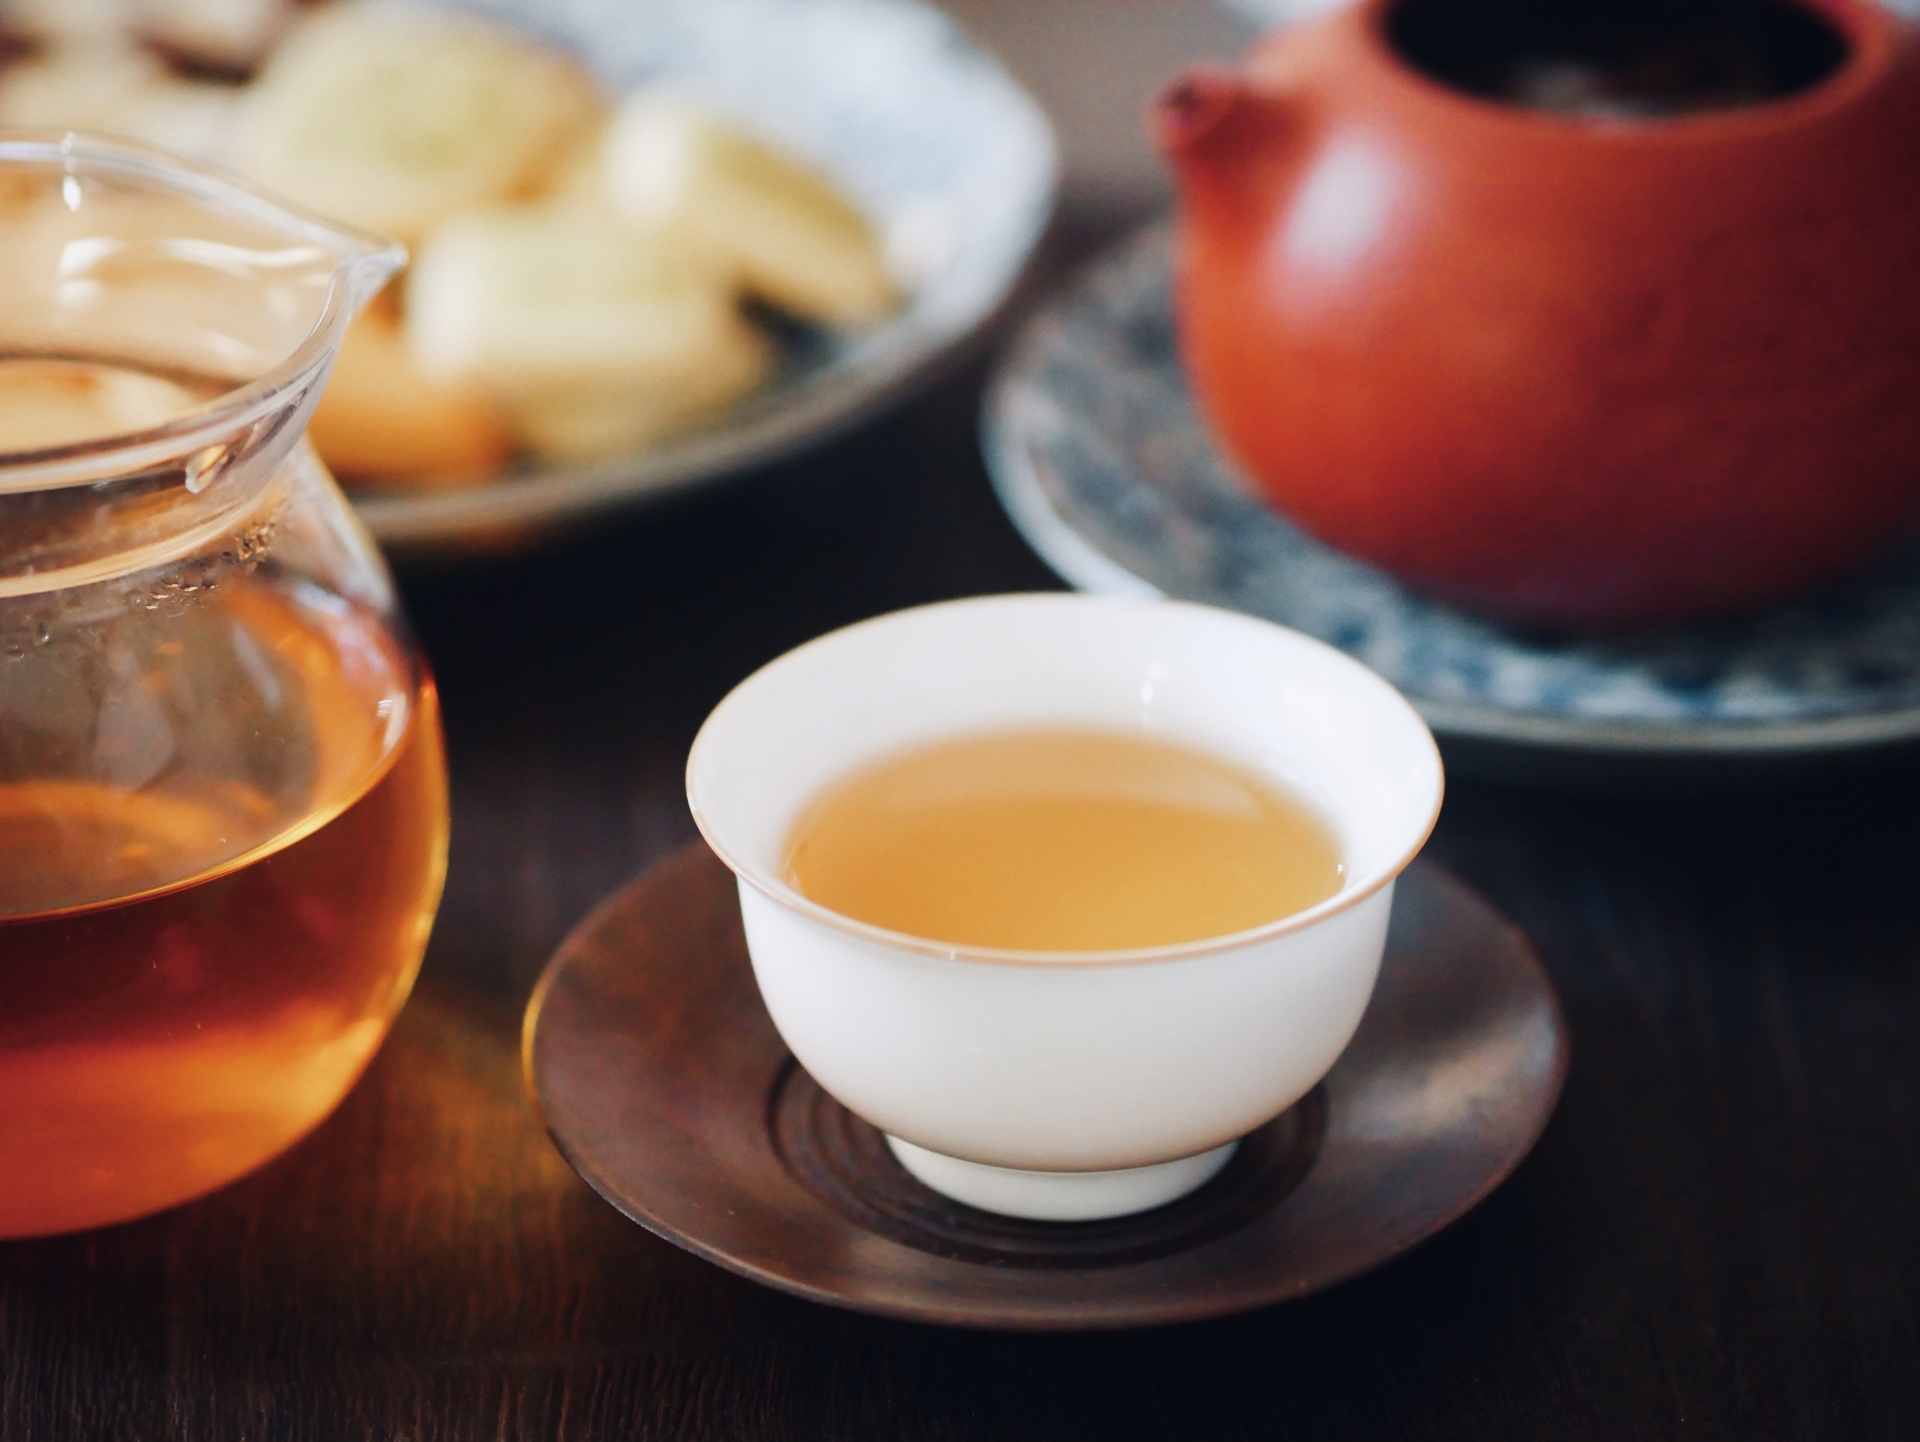 烏龍茶のおすすめ商品比較表